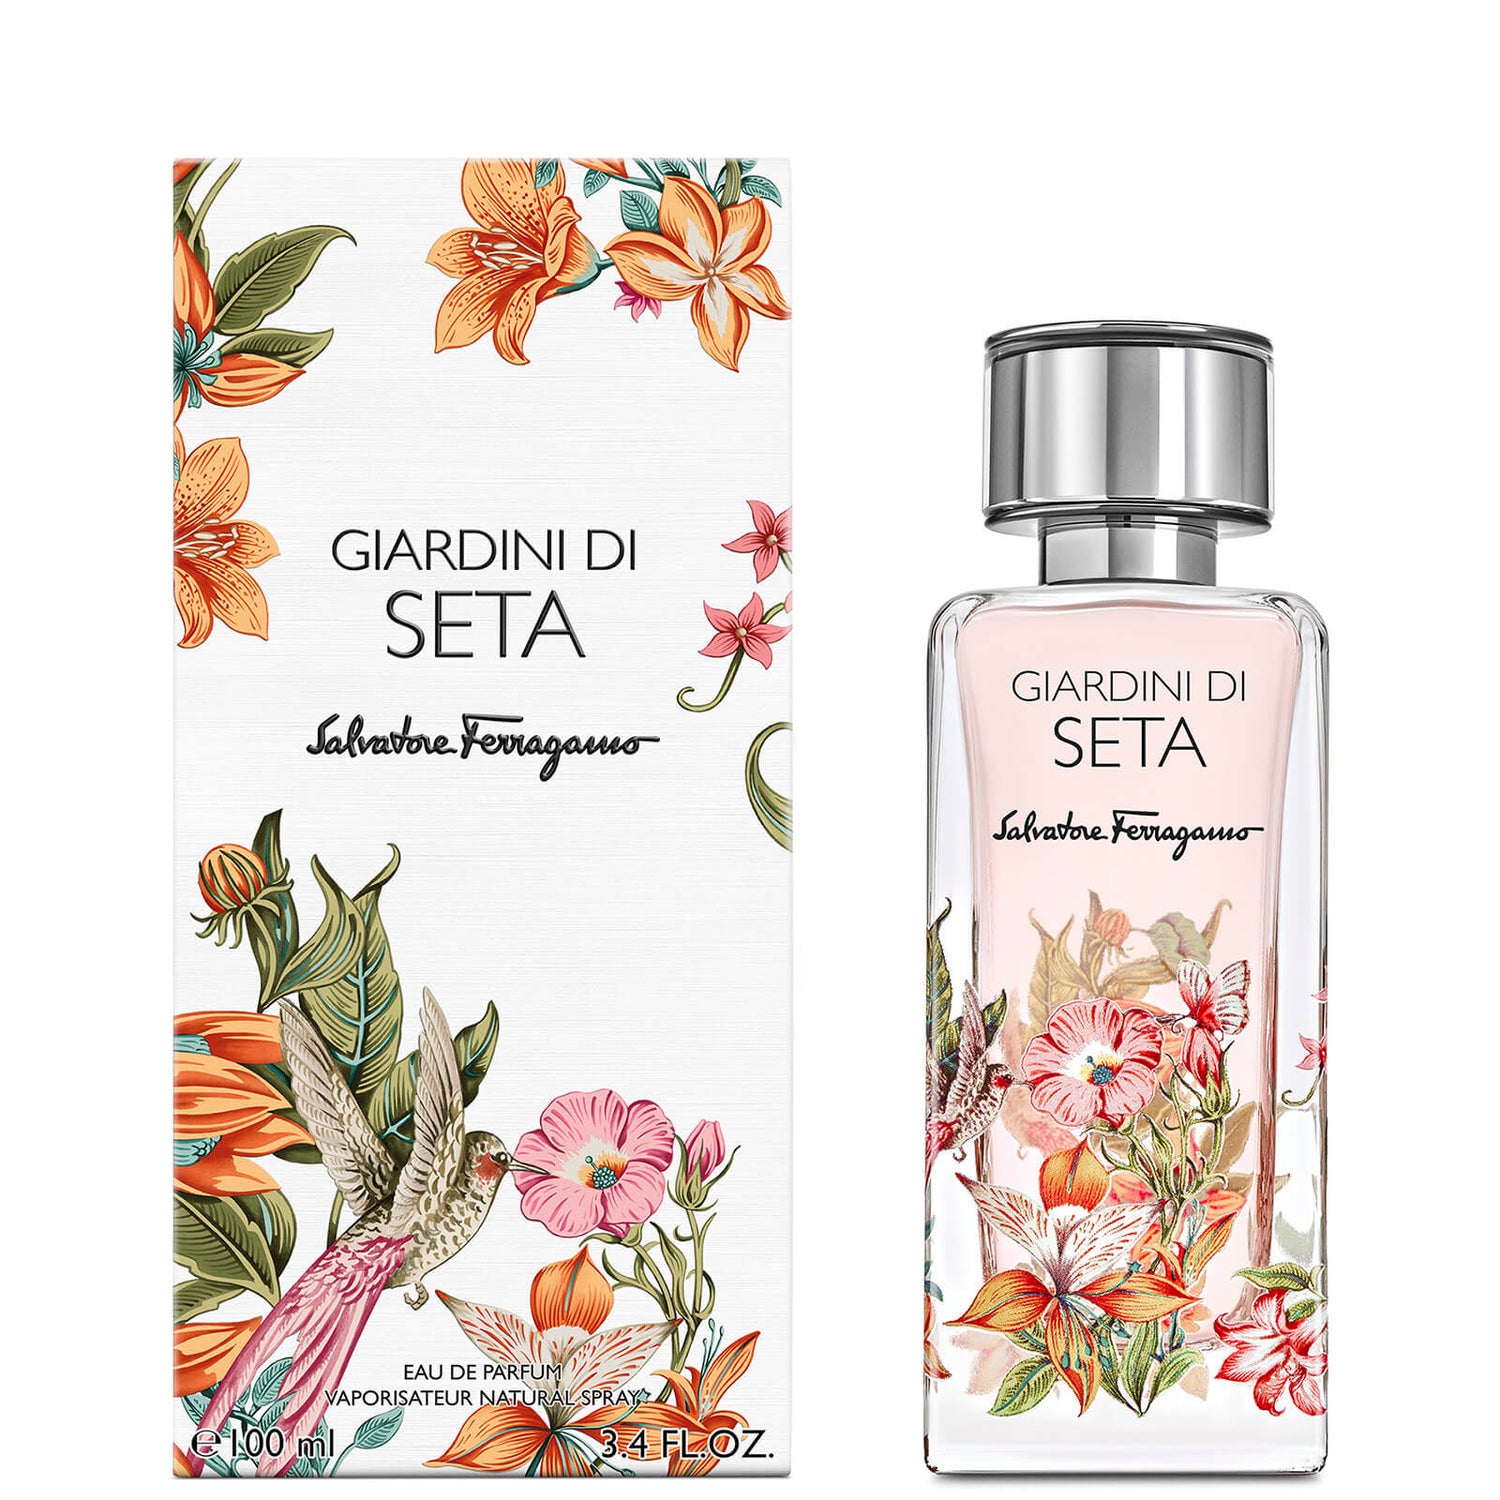 Salvatore Ferragamo Storie Giardini Di Seta Eau de Parfum 100 ml